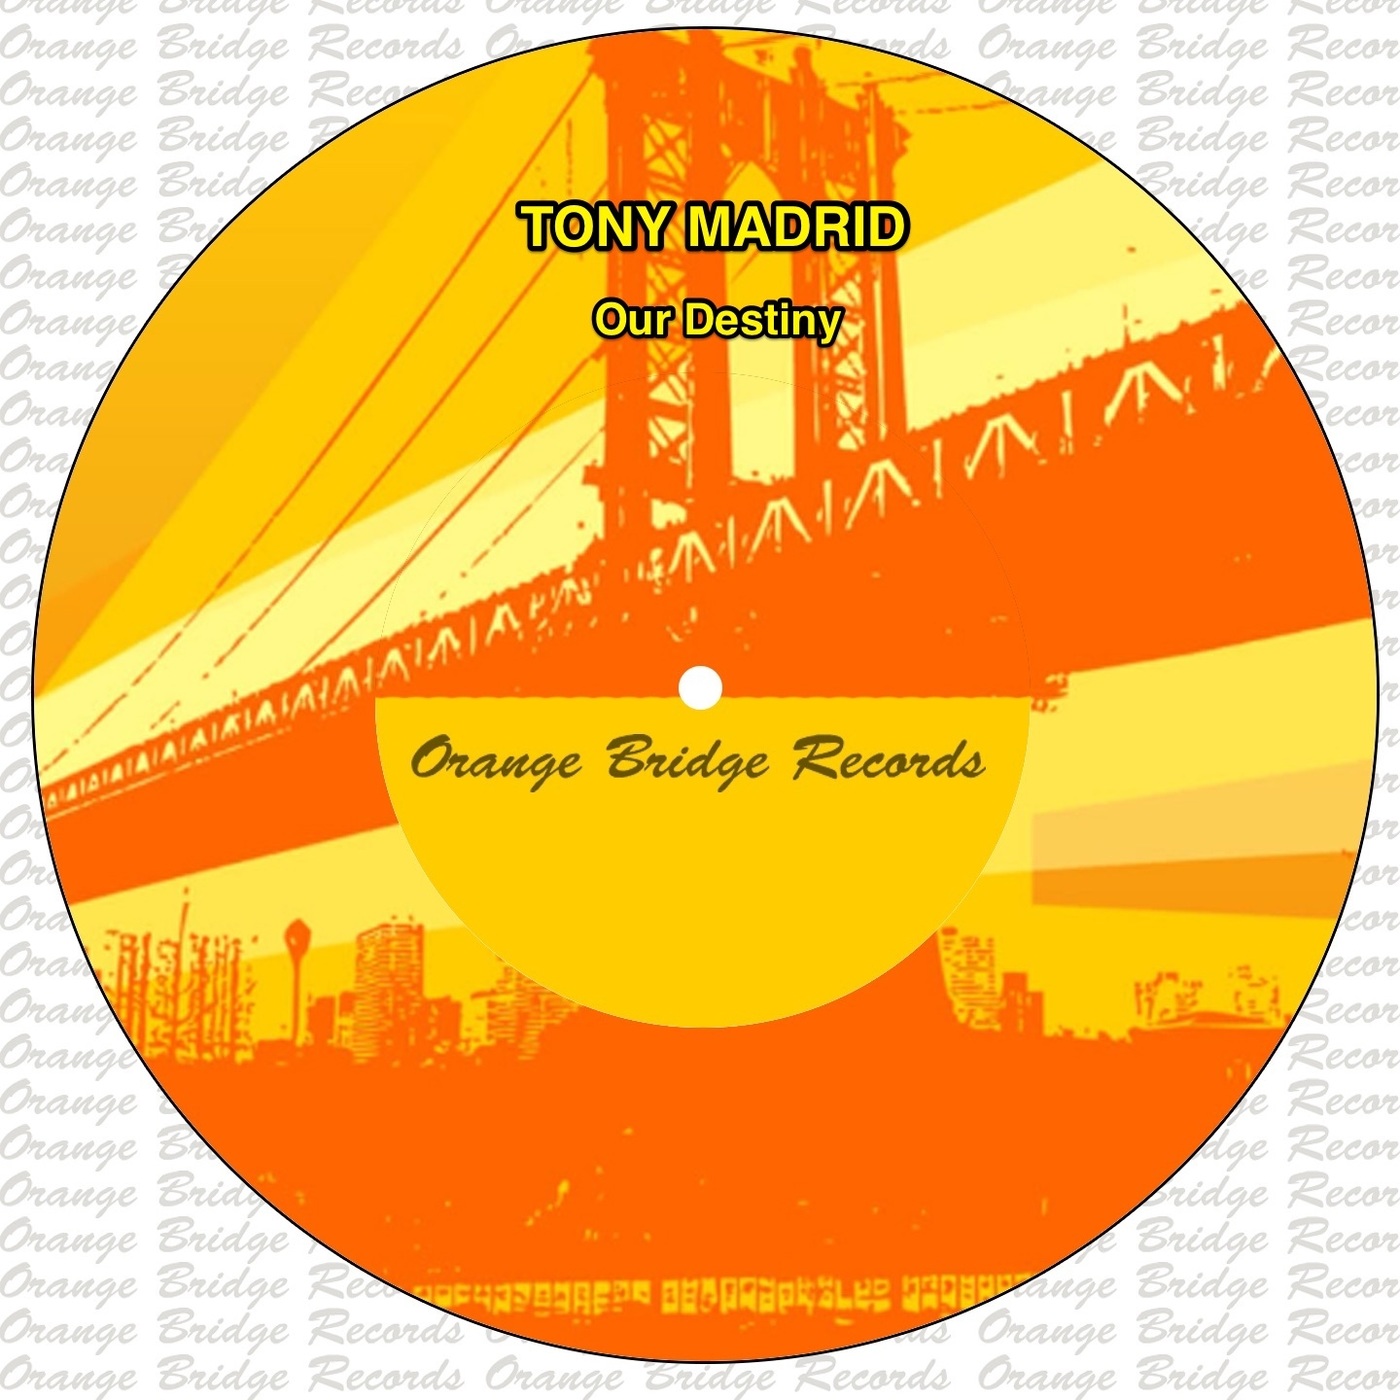 Tony Madrid - Our Destiny / Orange Bridge Records